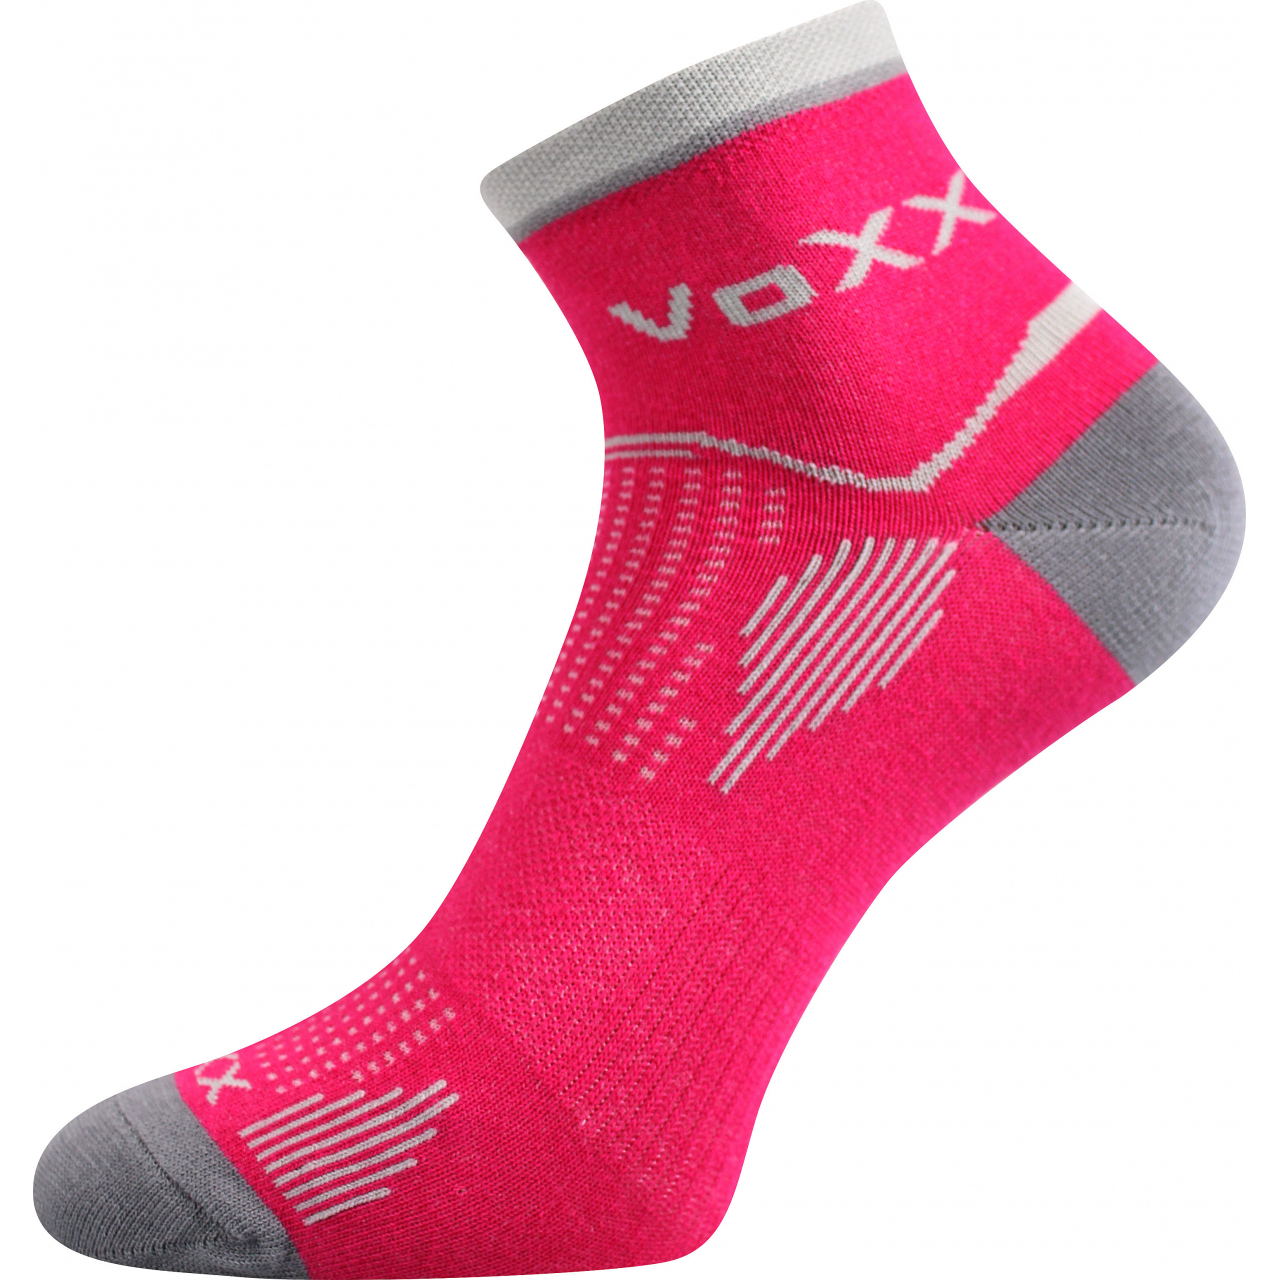 Ponožky unisex sportovní Voxx Sirius - tmavě růžové, 39-42